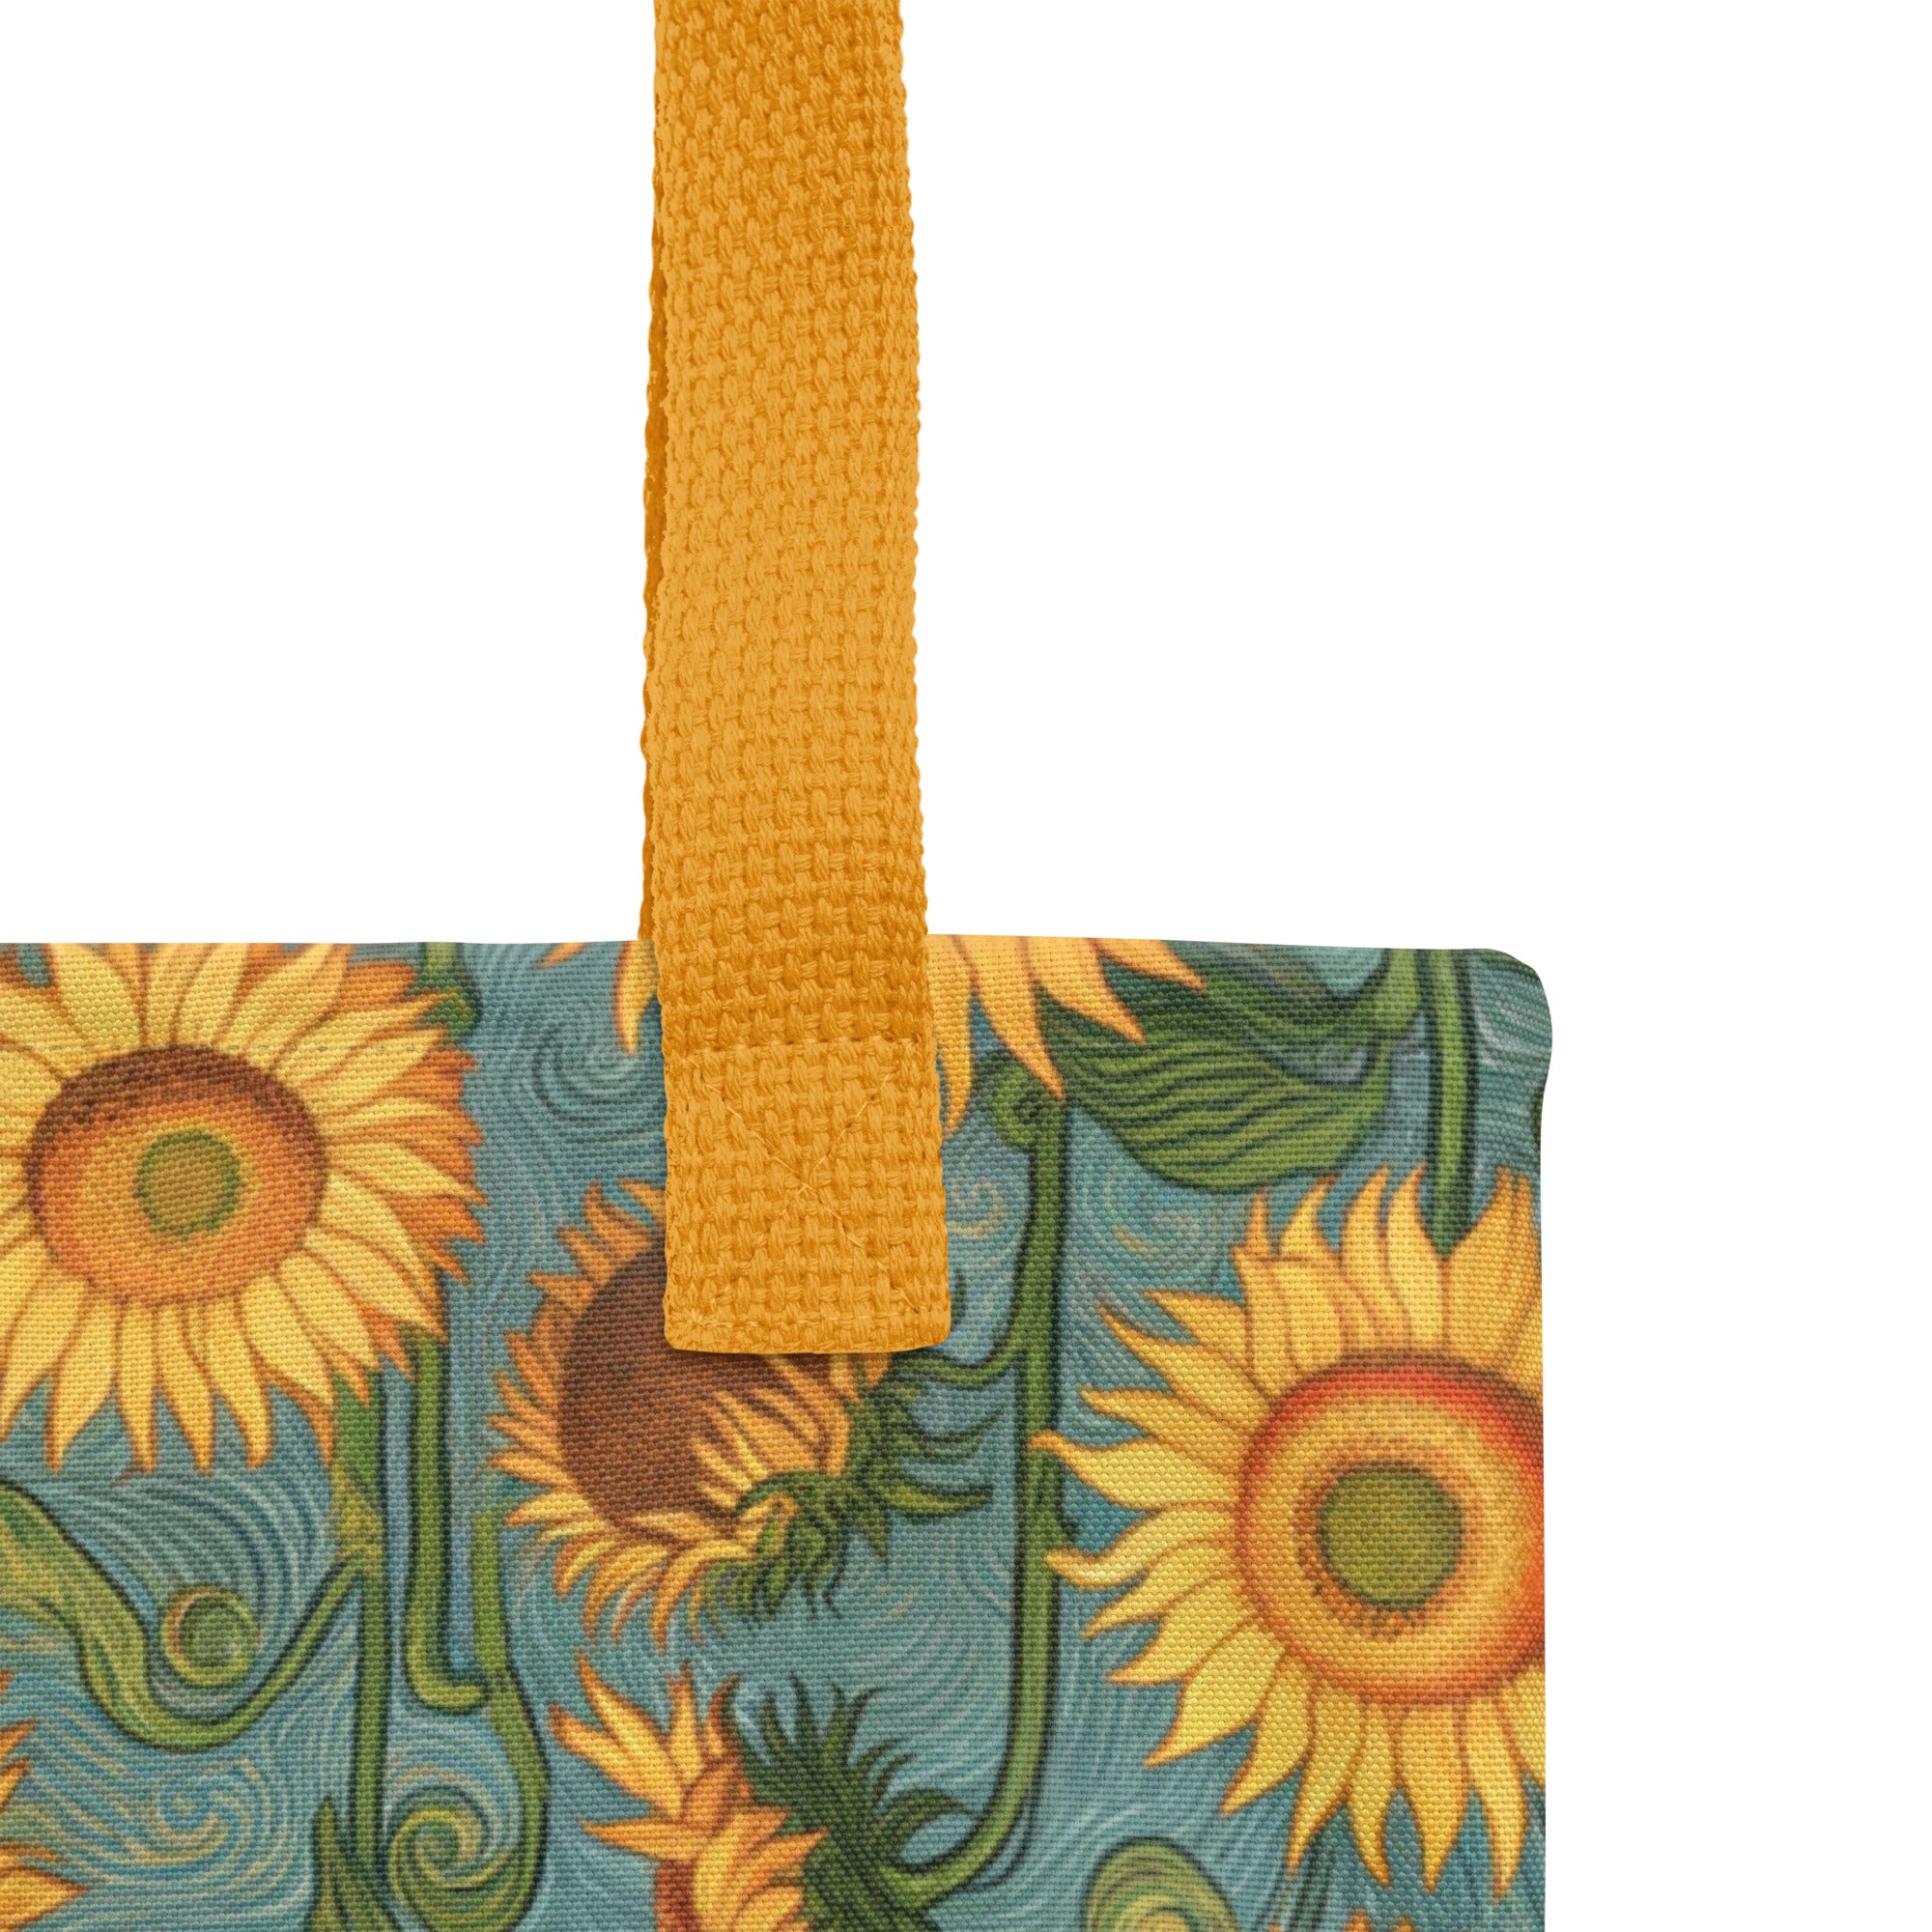 Einkaufstasche „Sonnenblumen“ von Vincent van Gogh, berühmtes Gemälde, Allover-Kunstdruck